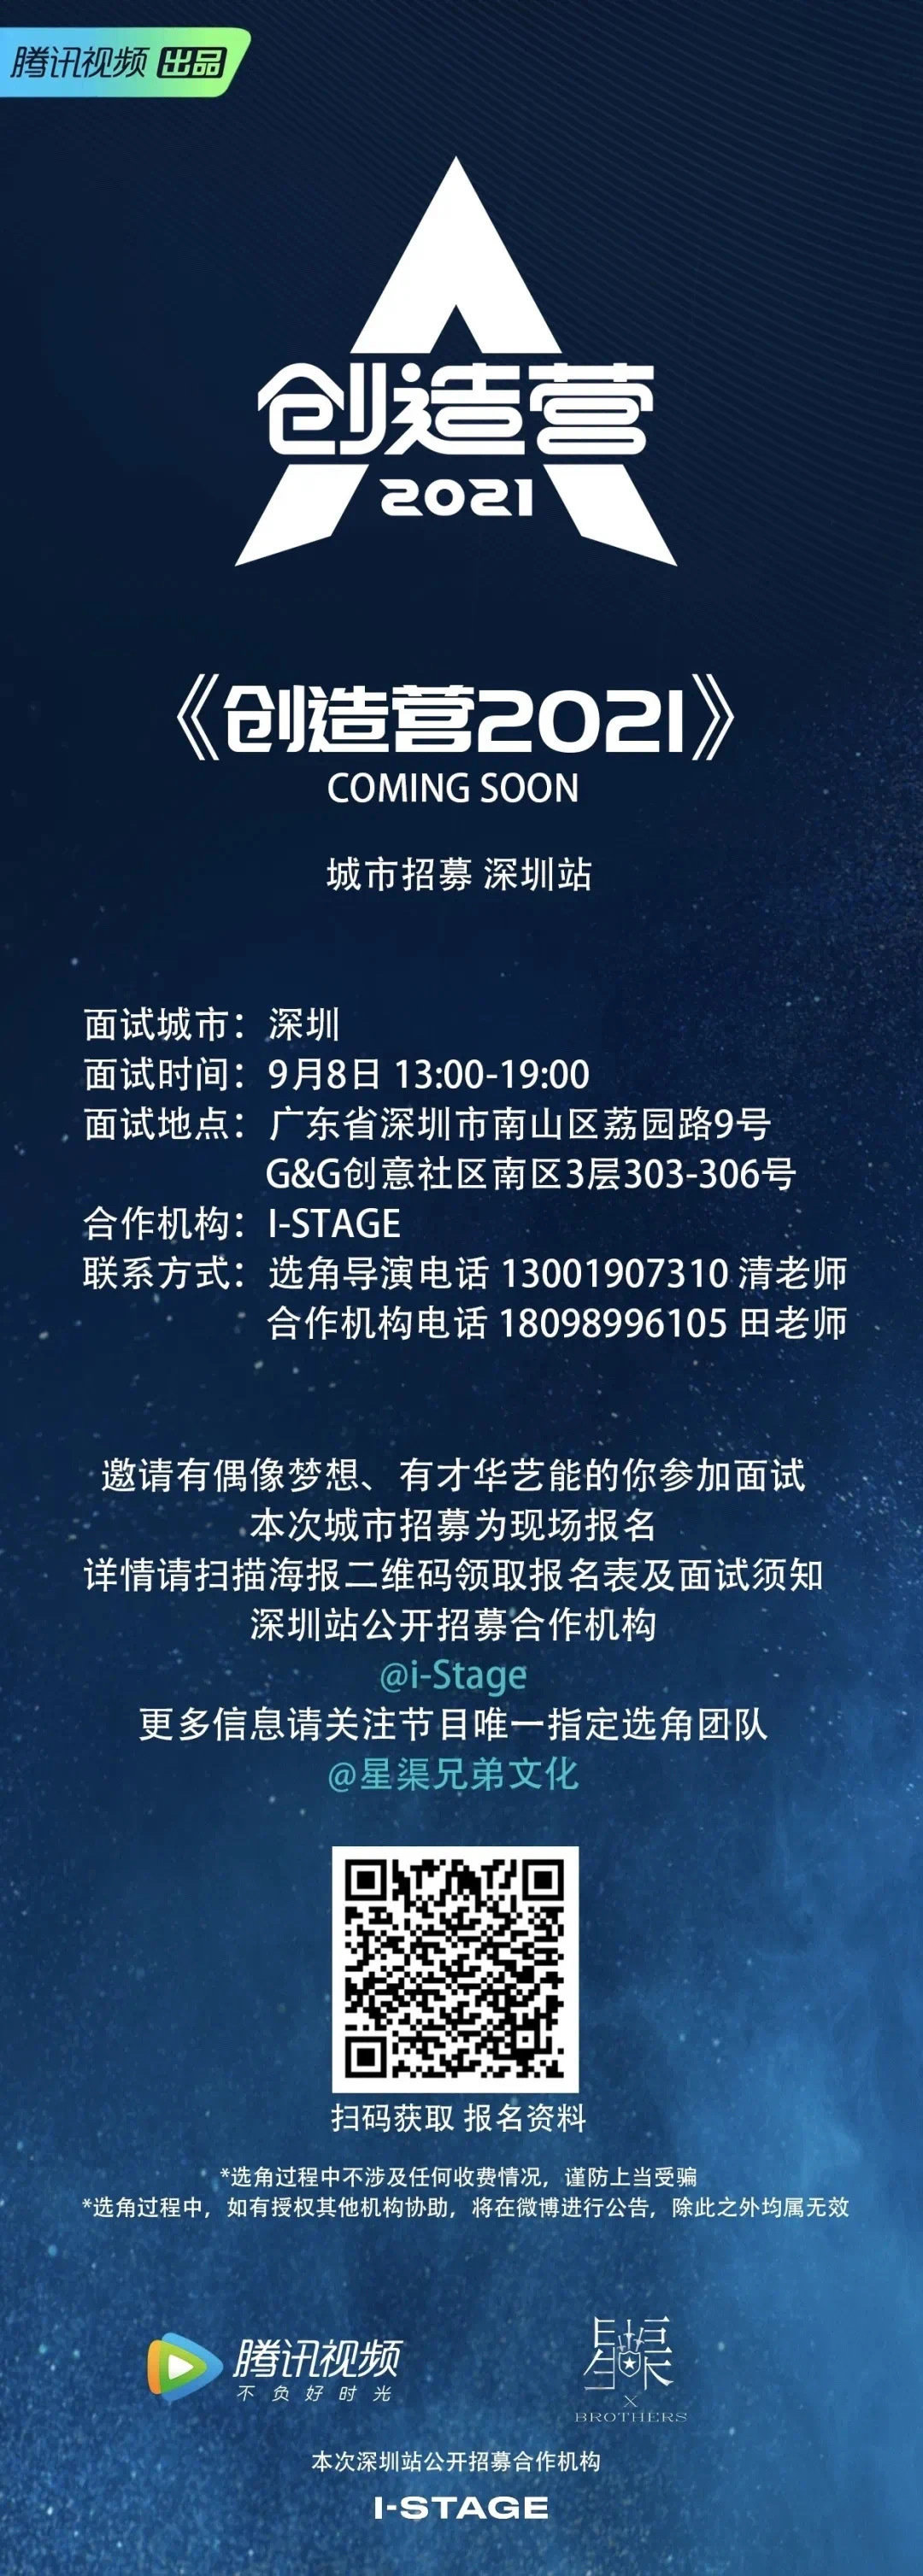 主题:[cp] #腾讯视频[超话]# 《创造营2021》广州站,深圳站海选招募